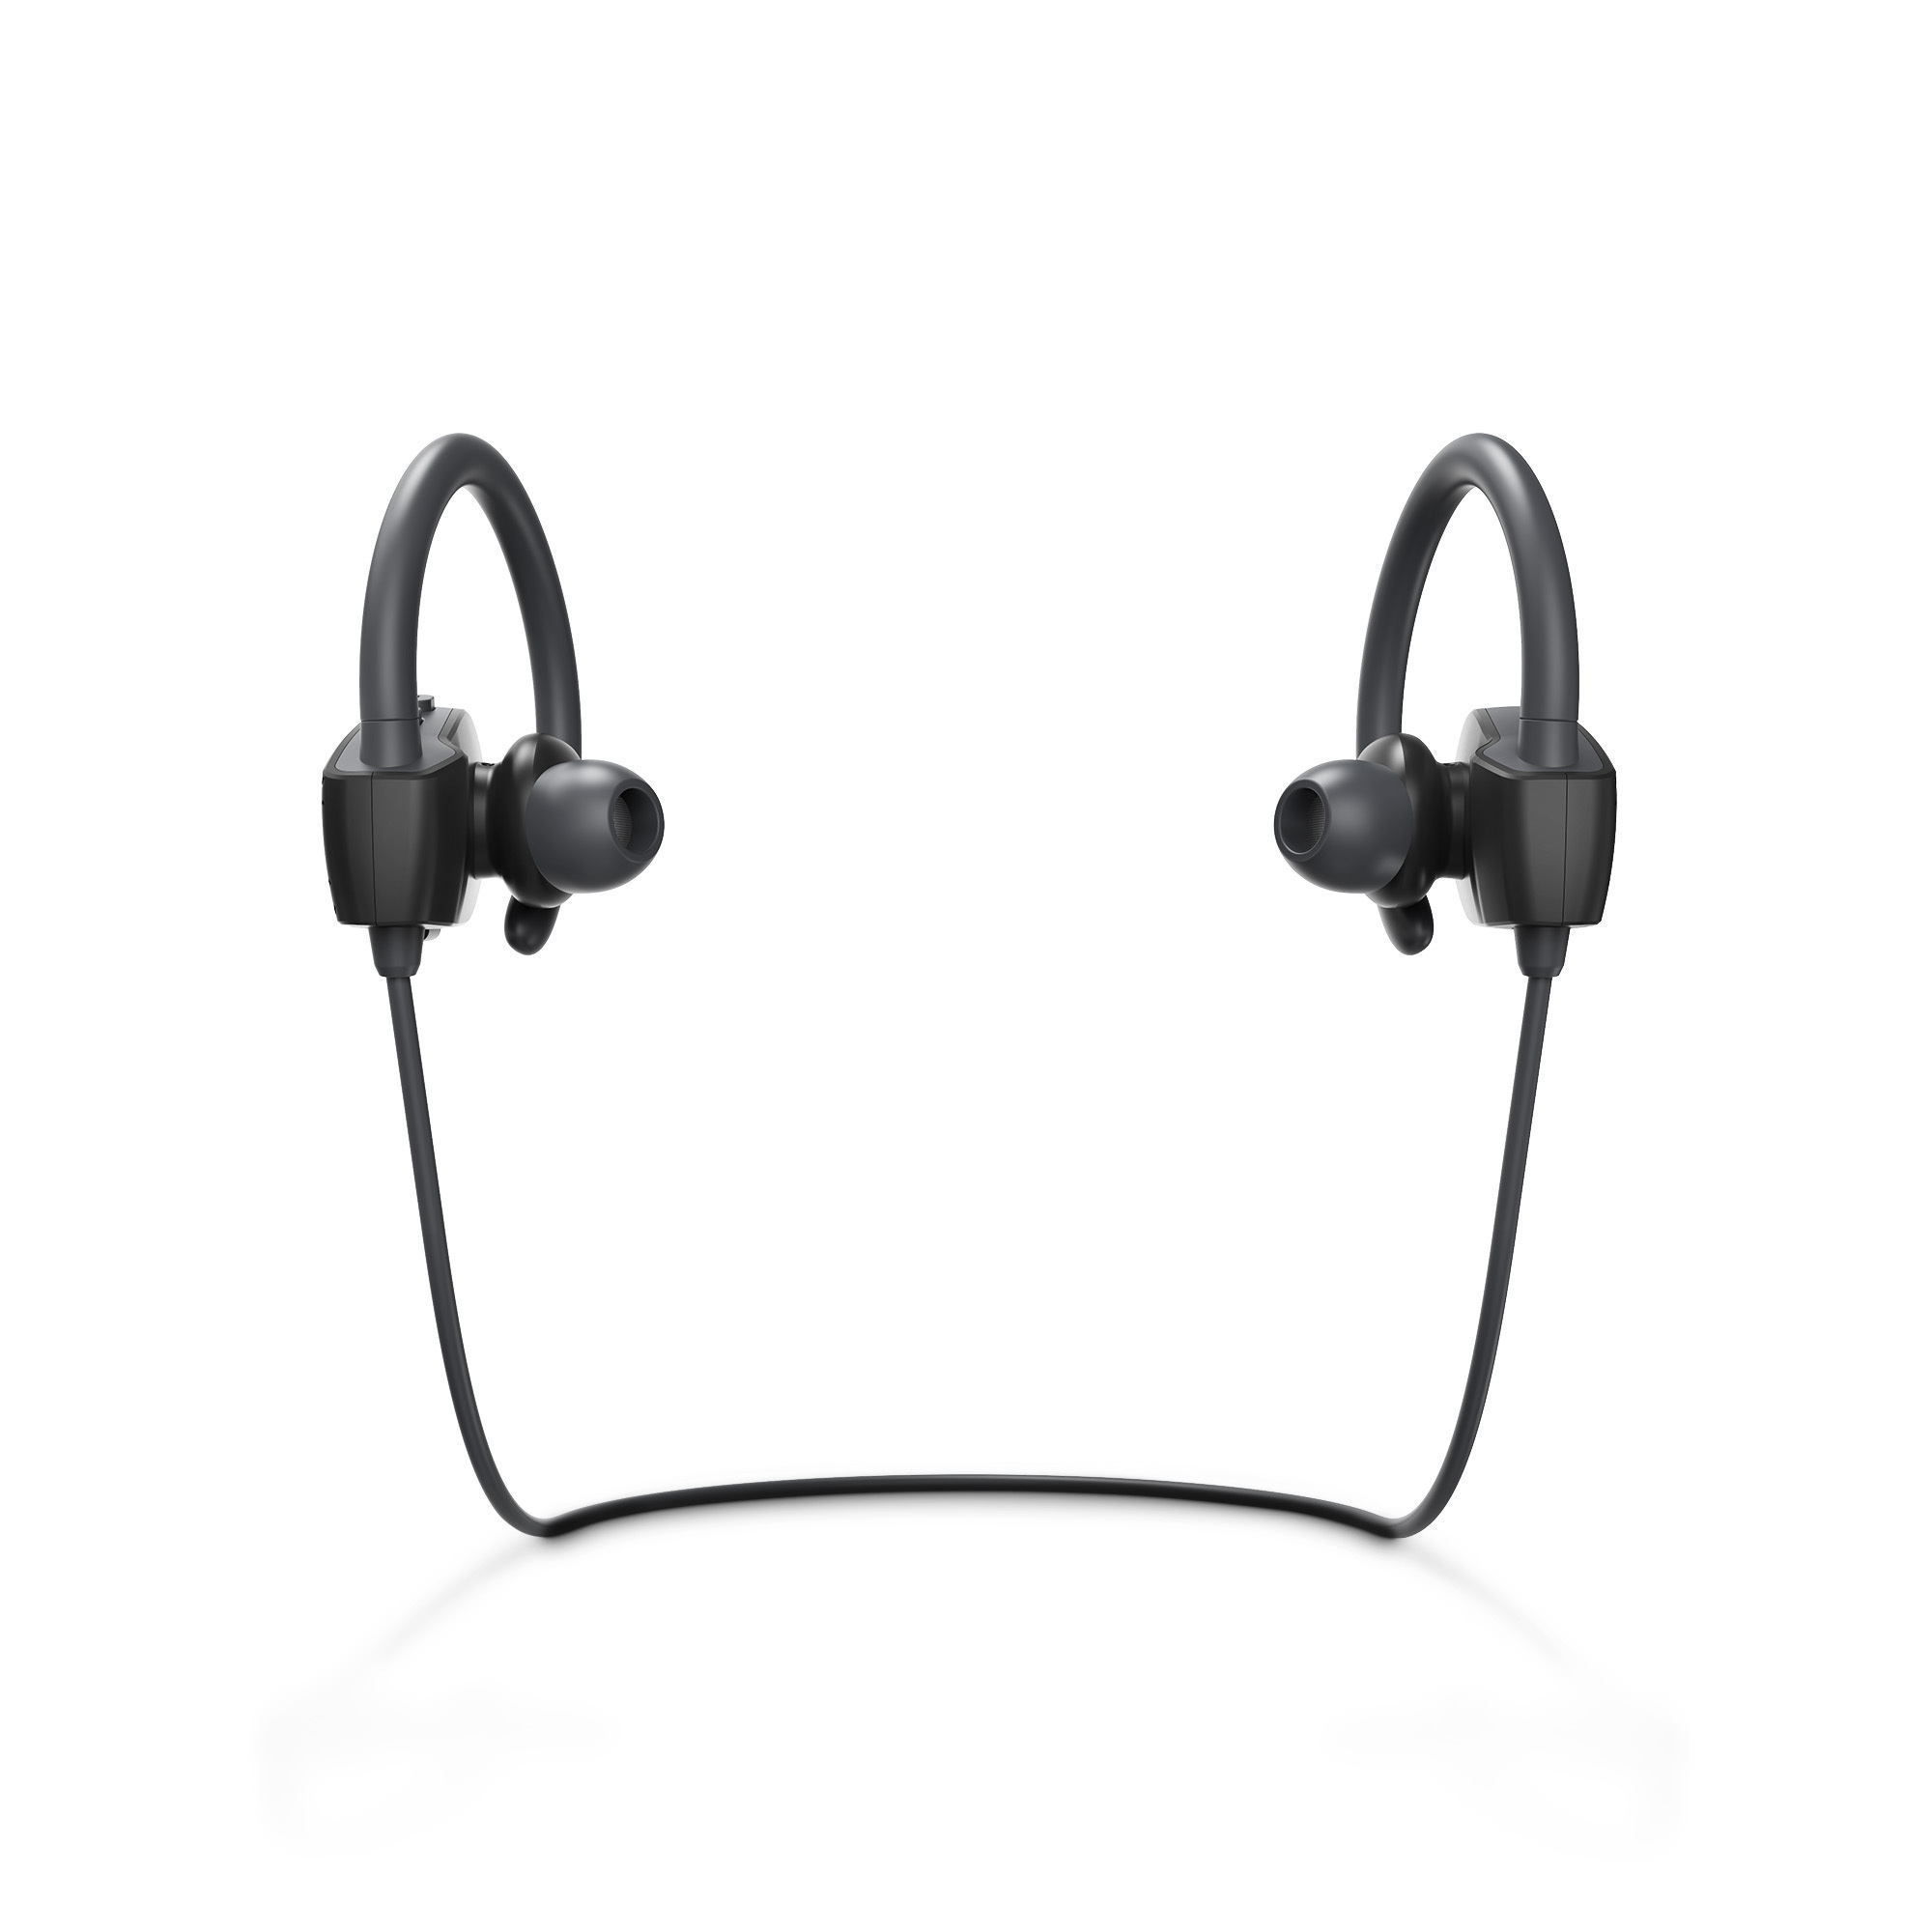 Sony presenta los WF-1000XM4, nueva referencia en auriculares inalámbricos